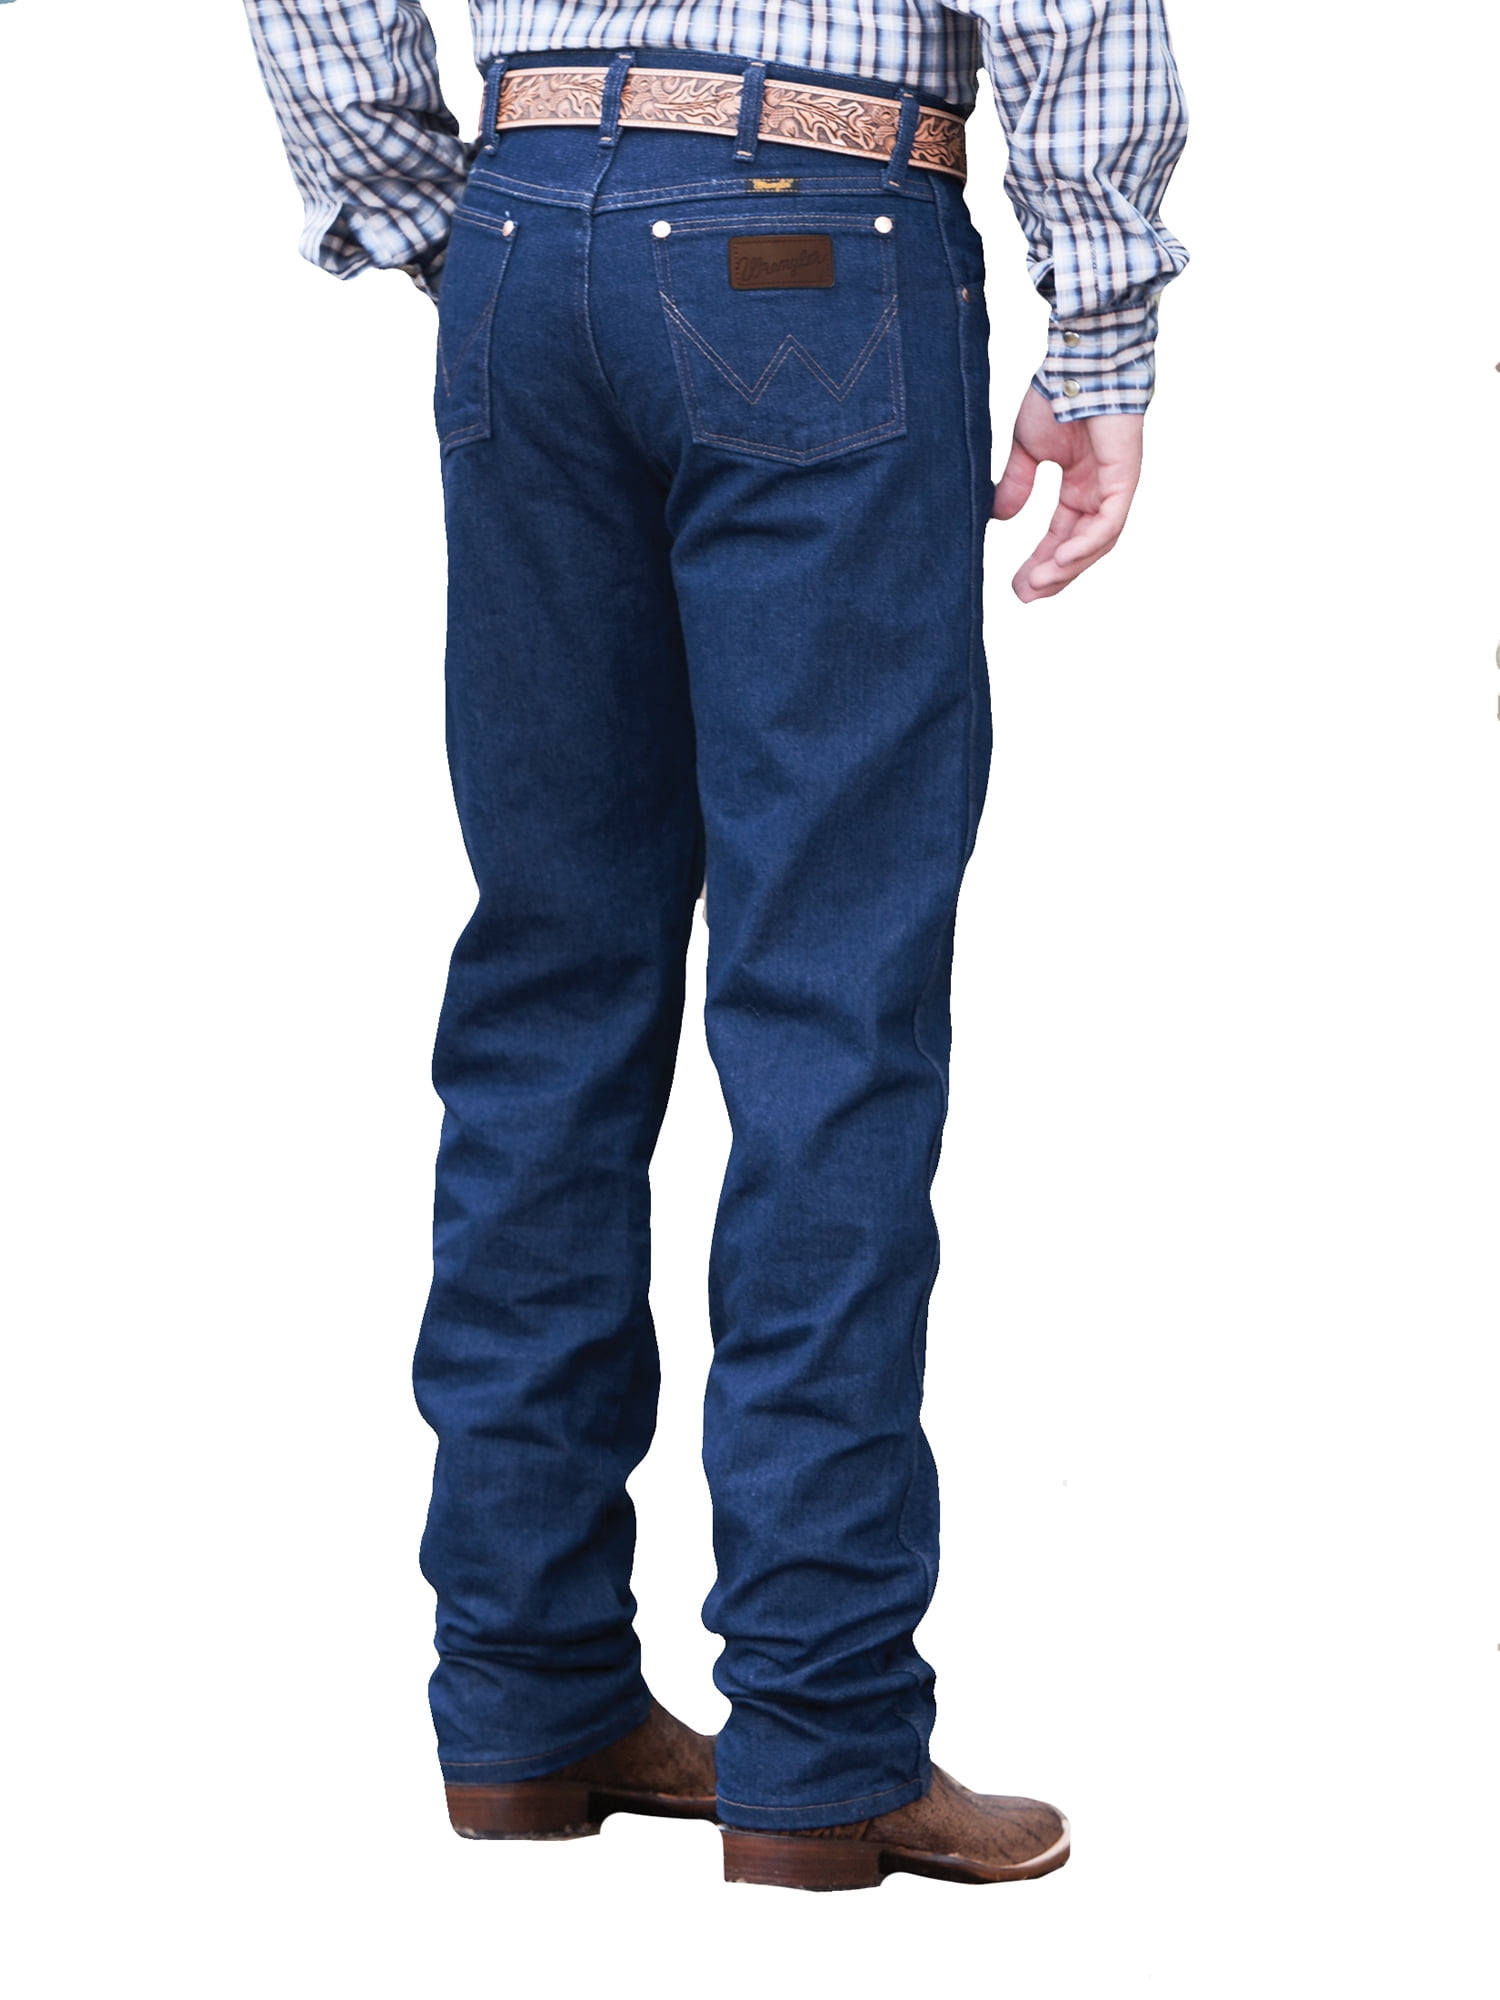 Wrangler Original Fit Prewashed Indigo Jeans 37-36 